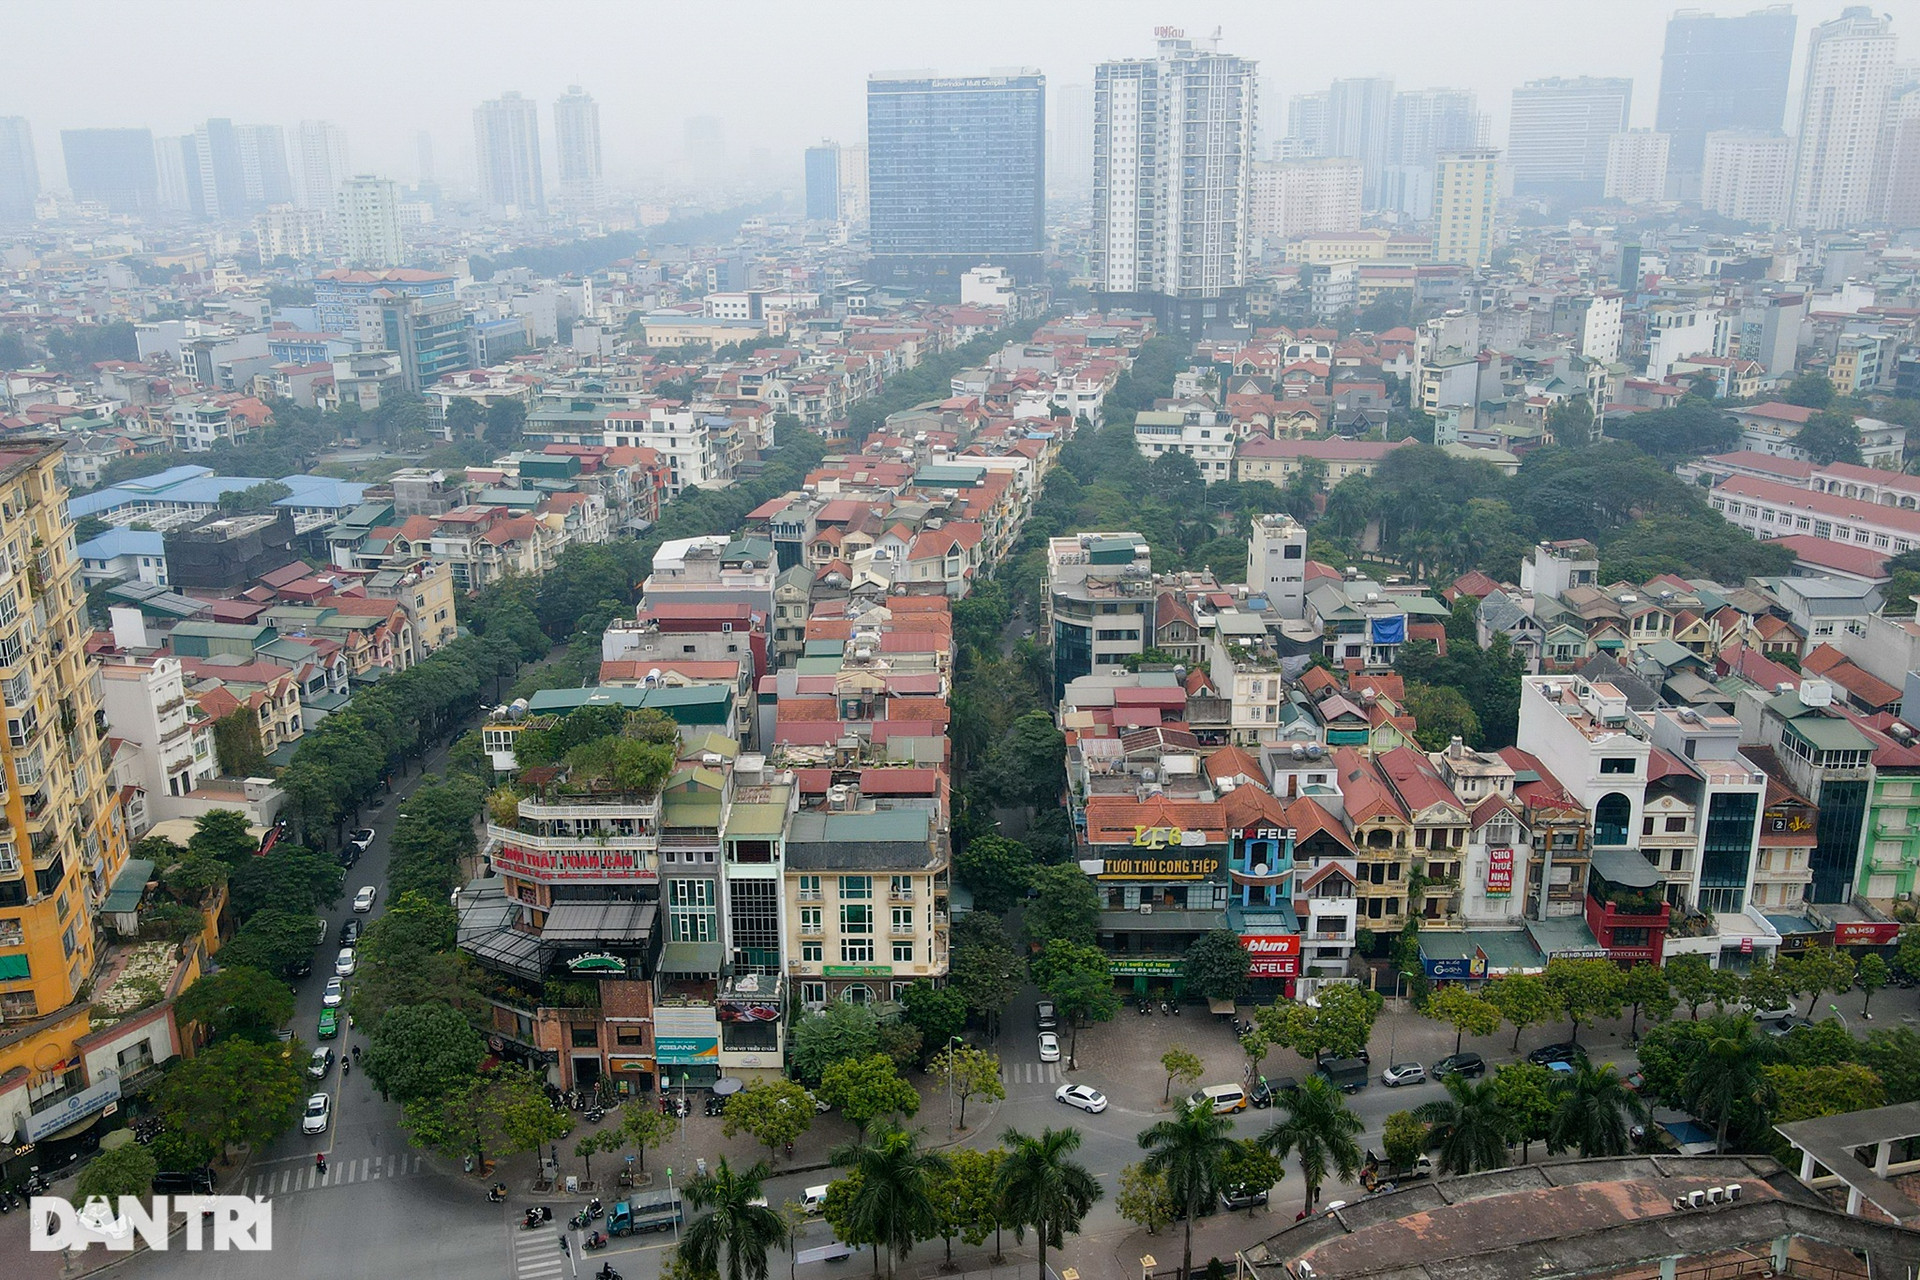 Cận cảnh 2 phố ở Hà Nội vừa được đặt tên nhà thơ Lưu Quang Vũ và Xuân Quỳnh - 8